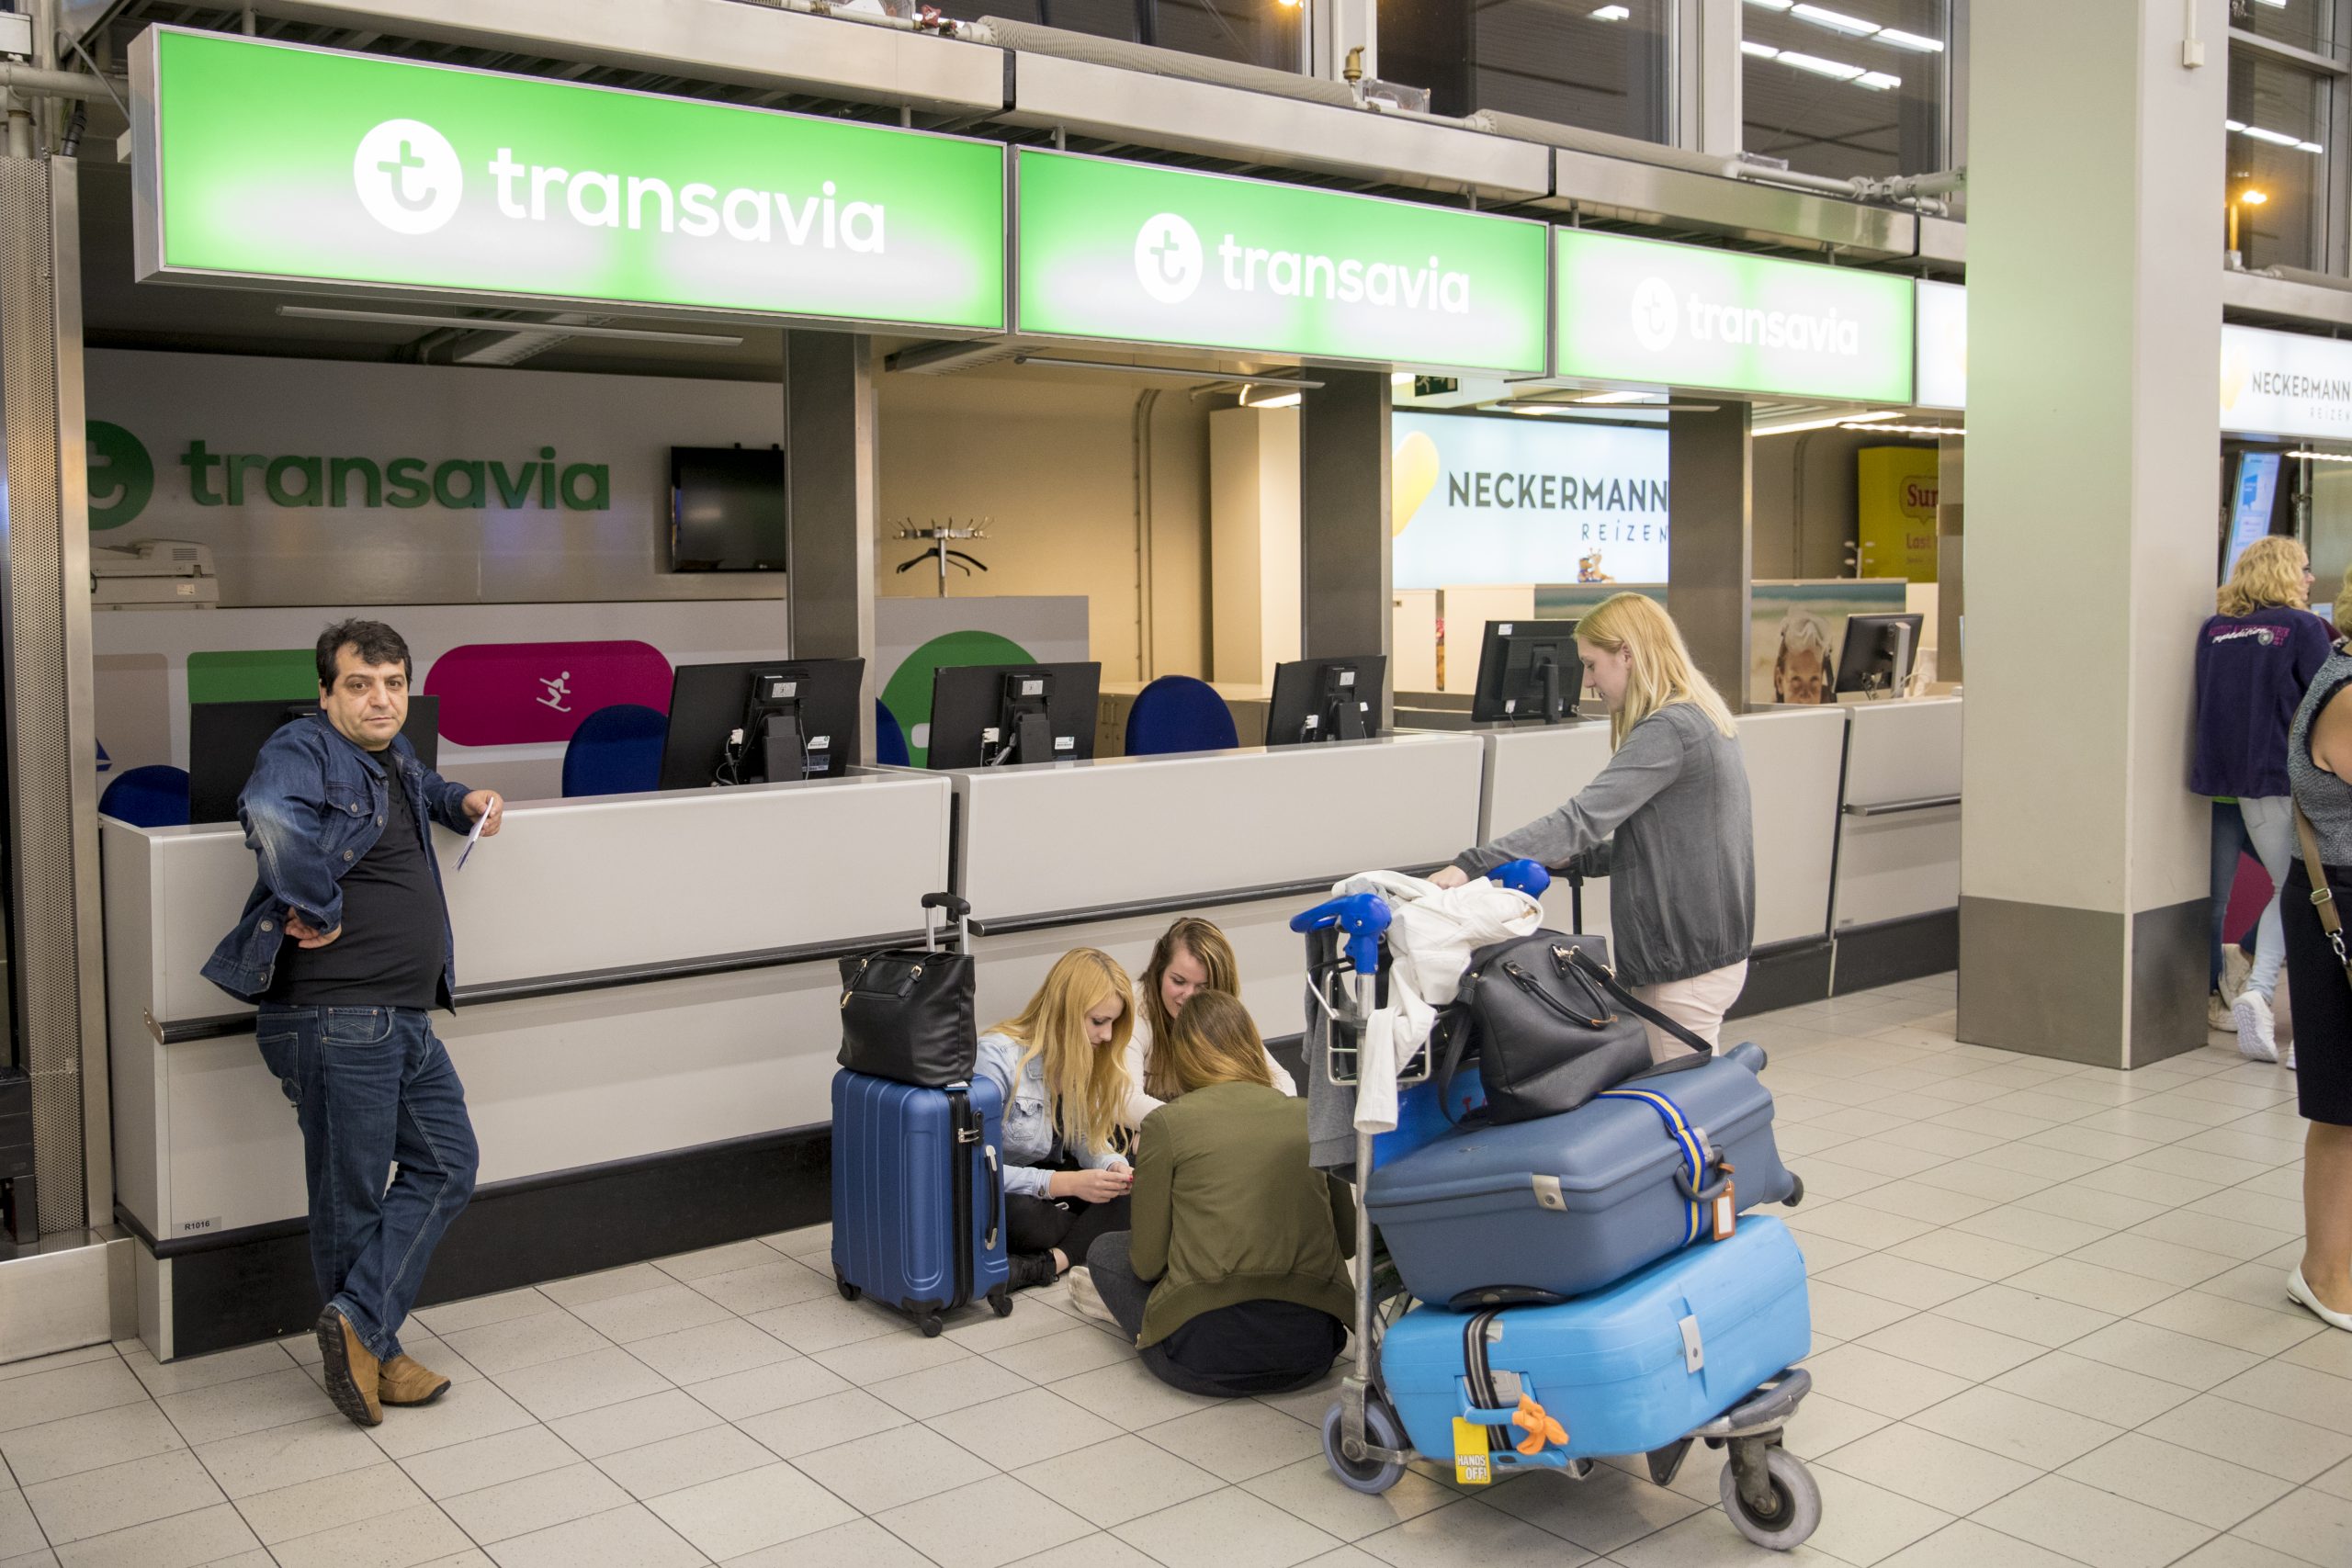 Afrika Inzichtelijk Visser Bij Transavia moet je betalen voor 'gegarandeerde handbagage'